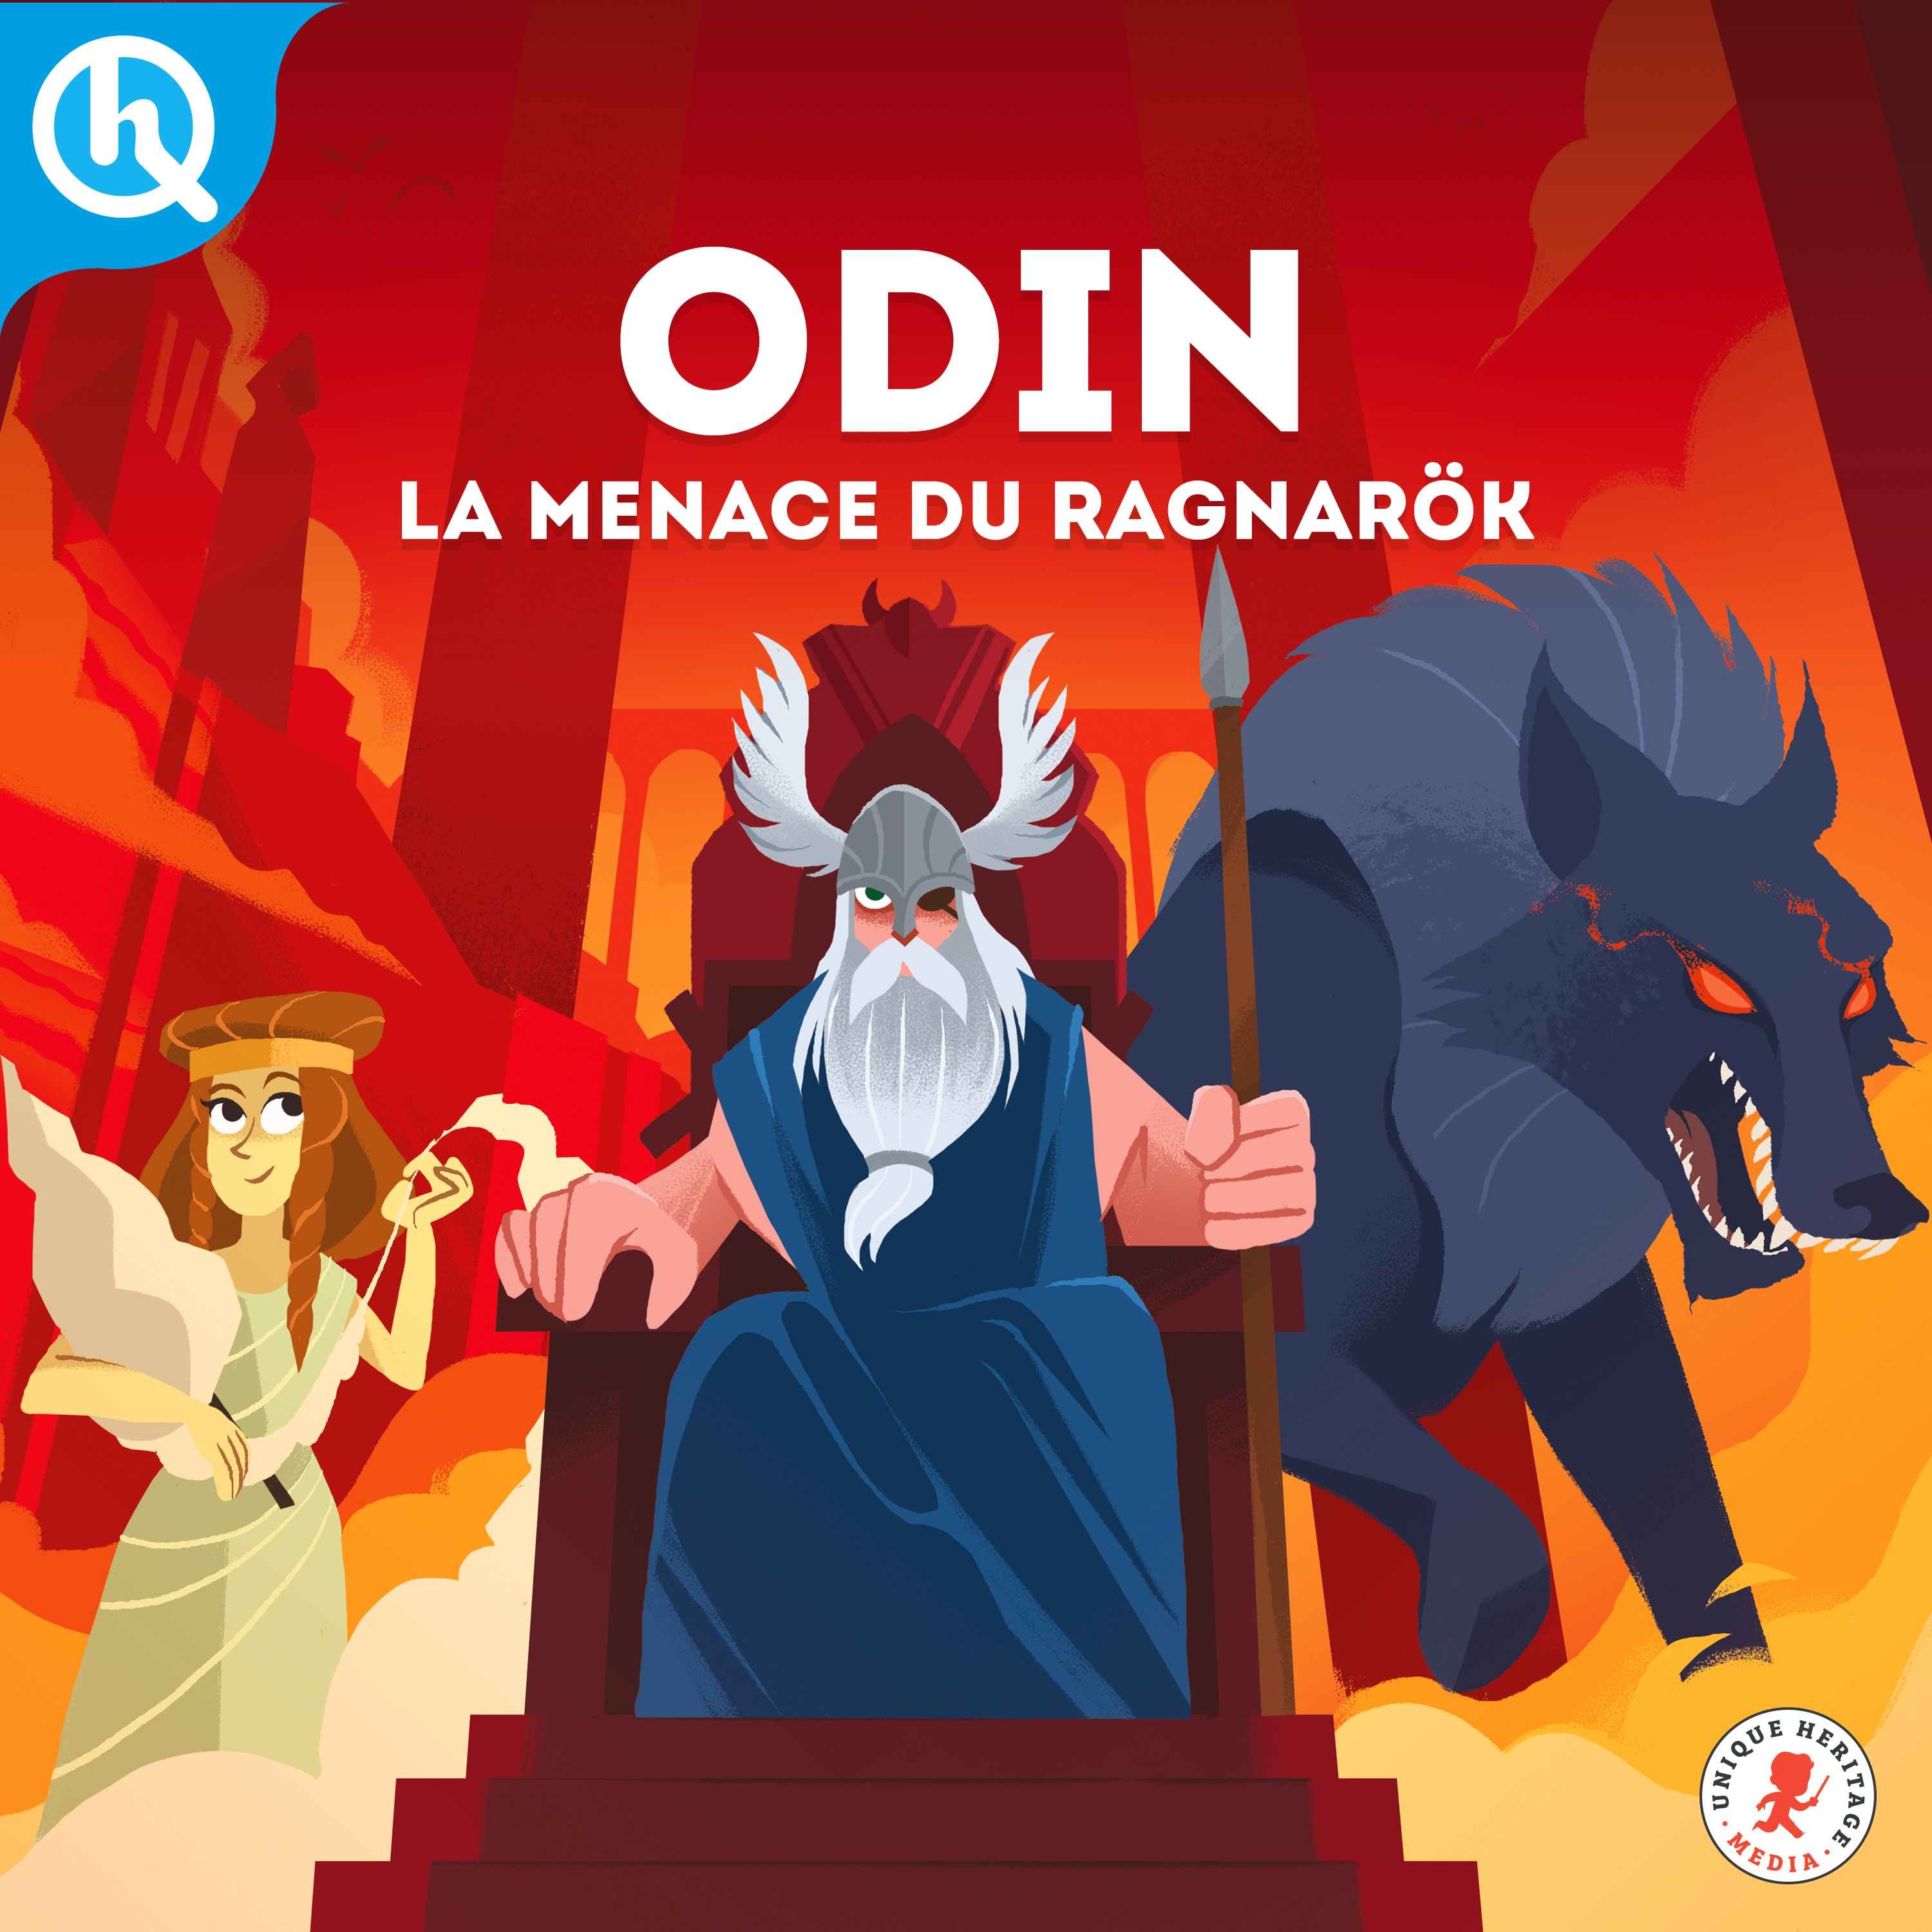 Odin, la menace du Ragnarök